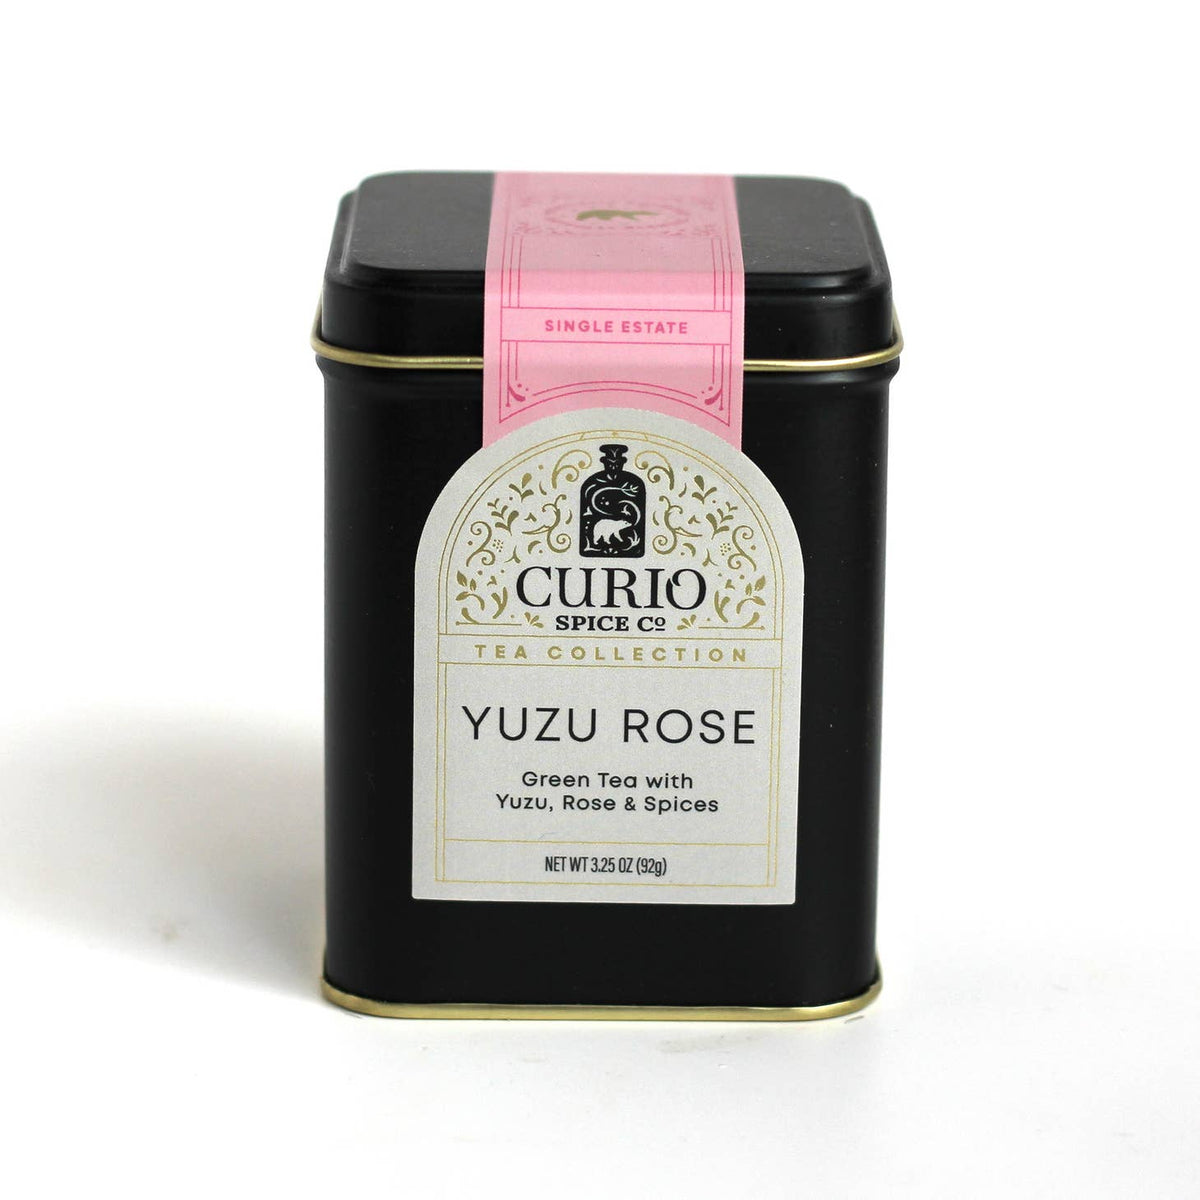 Curio Spice Co Yuzu Rose Tea